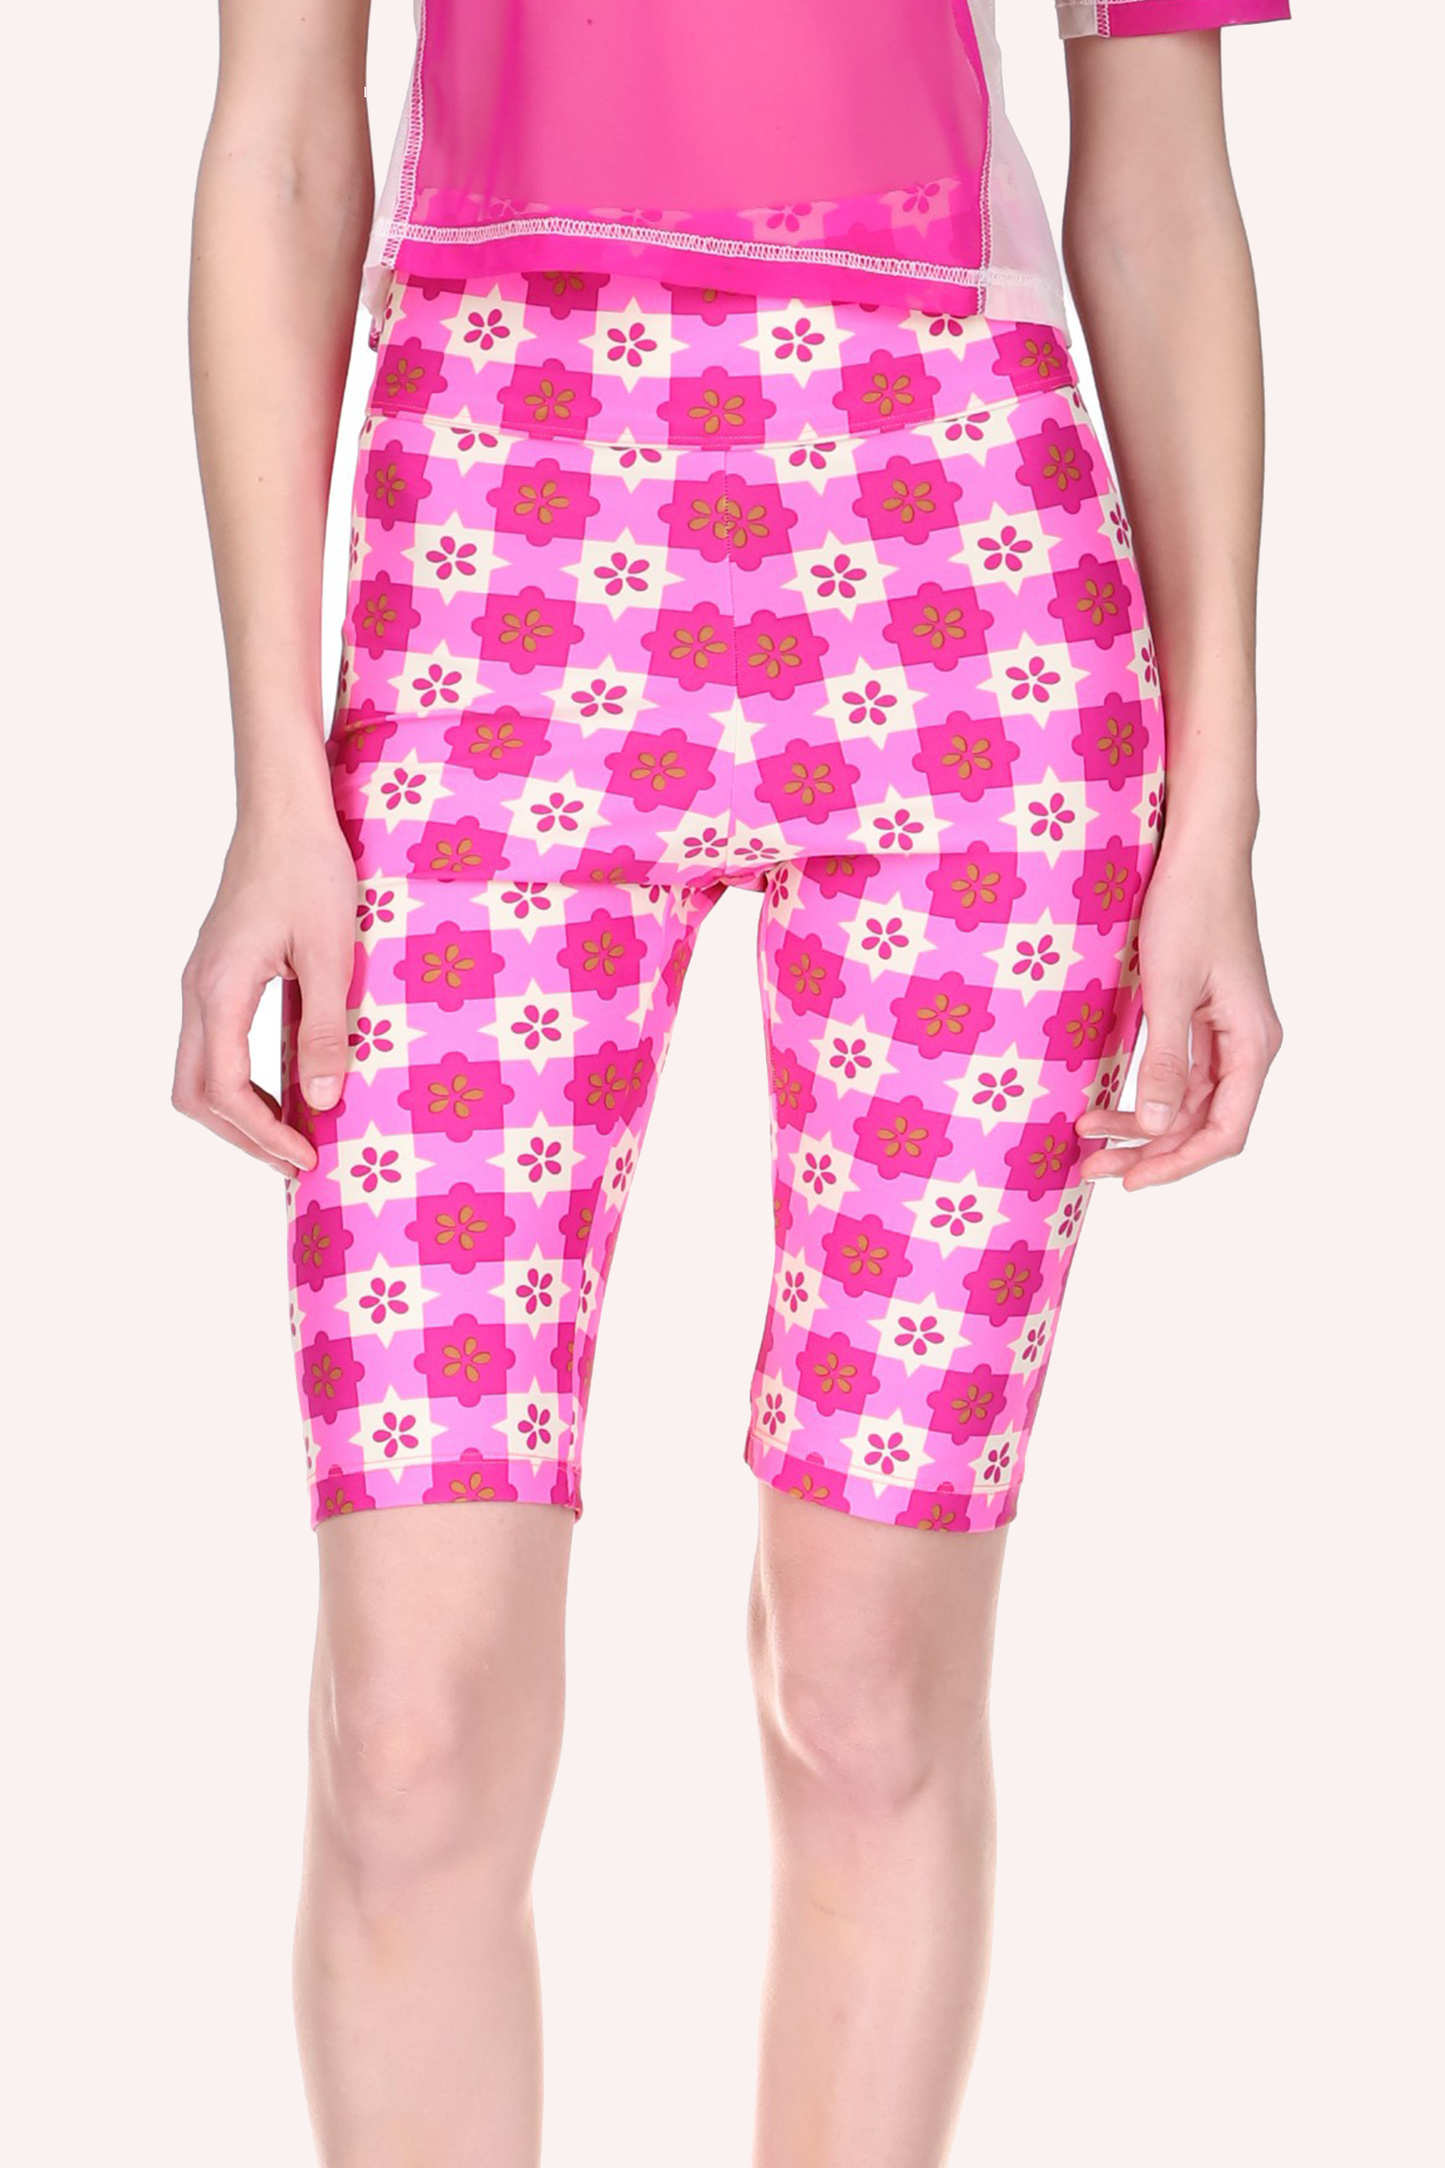 El culotte Utopian Gingham Bike Shorts Neon Pink presenta un estampado de estrellas rosas y blancas